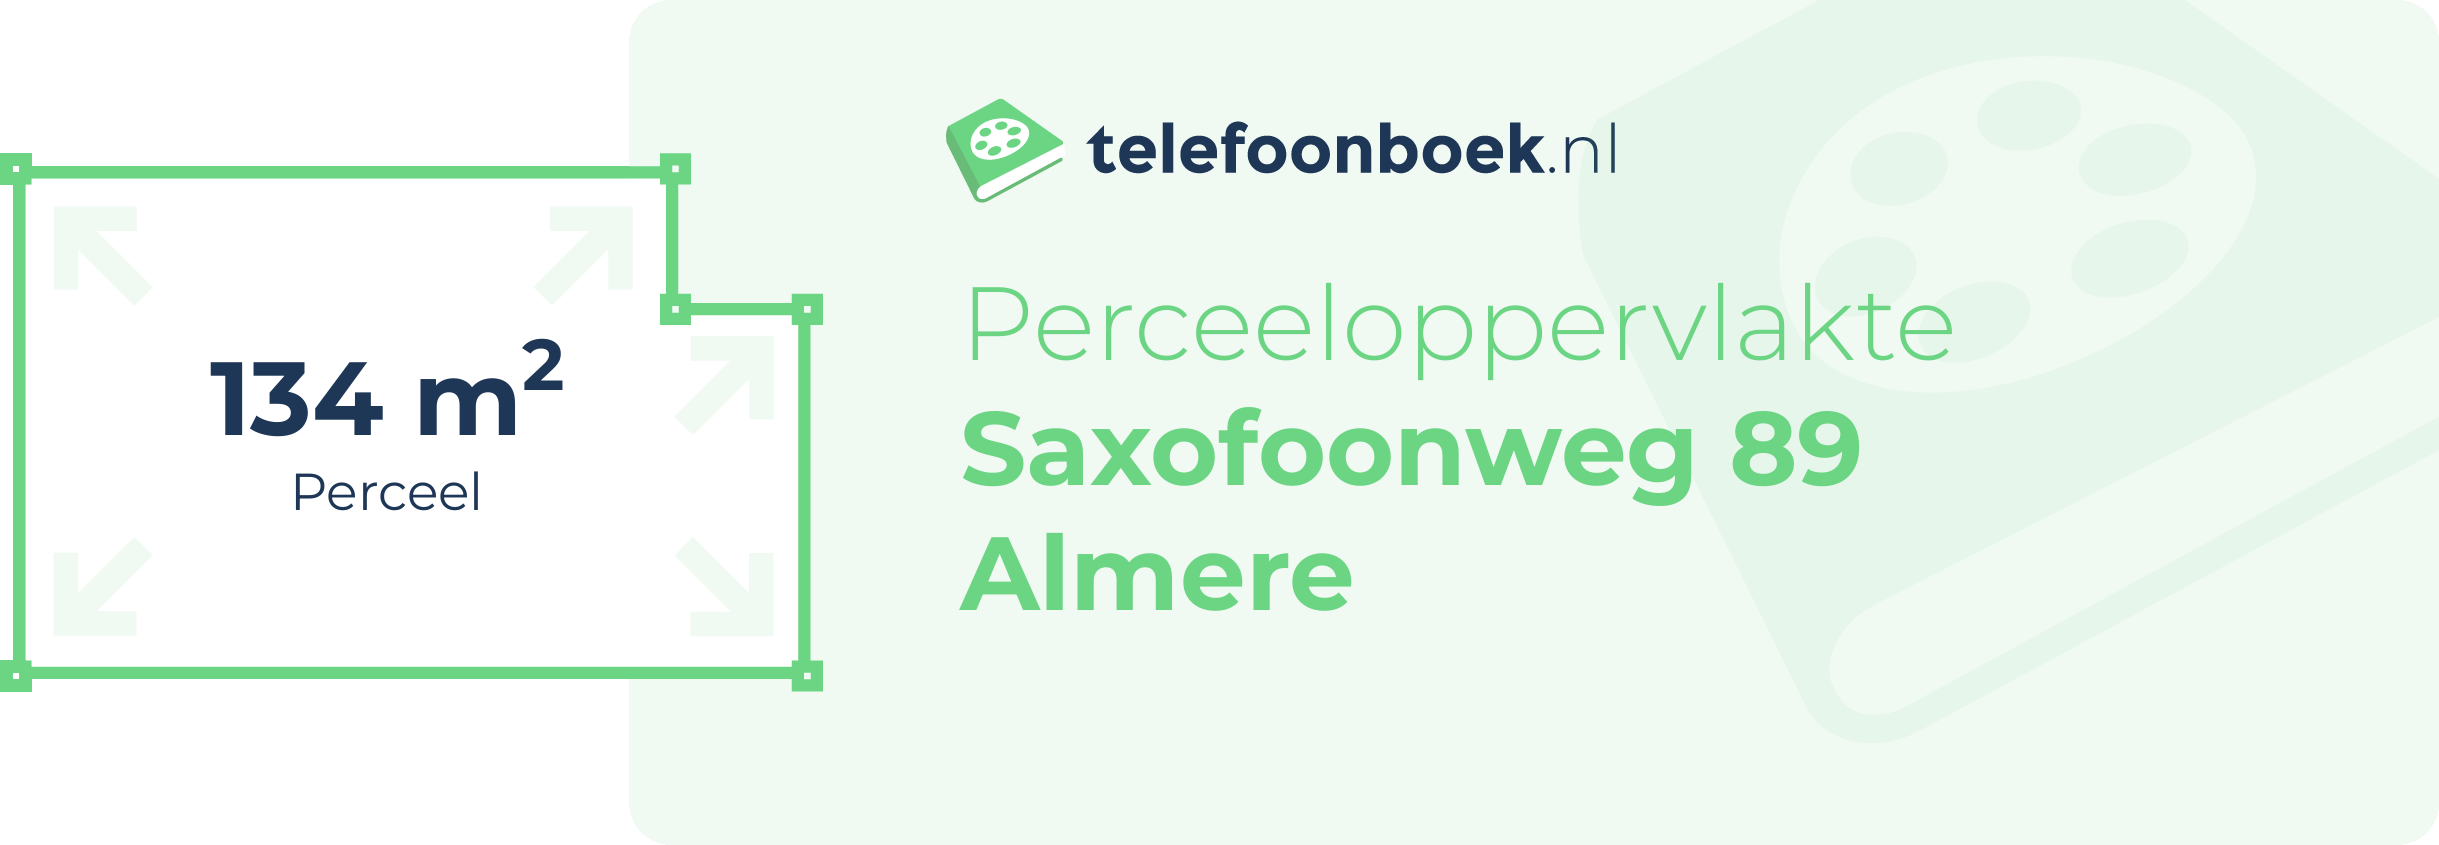 Perceeloppervlakte Saxofoonweg 89 Almere